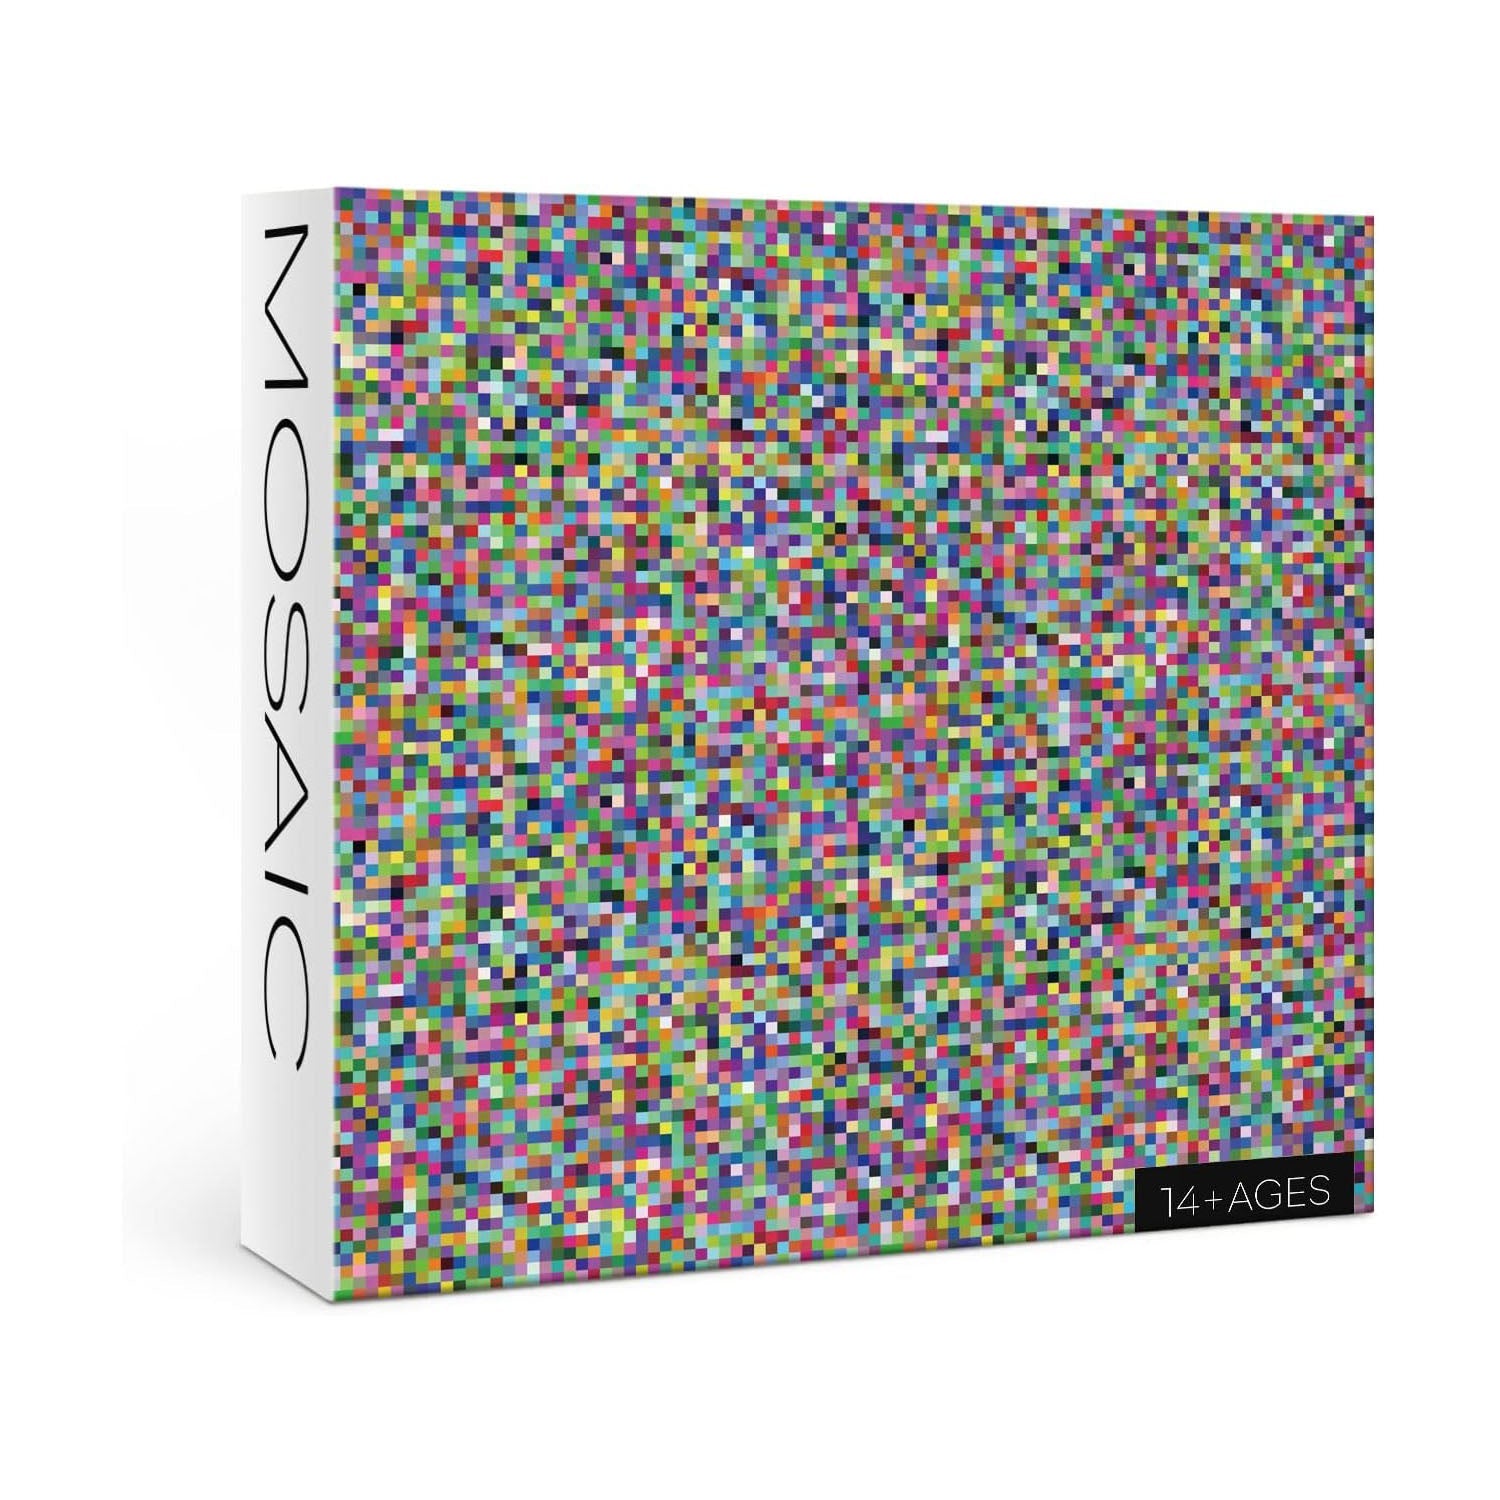 Färgglada mosaiker Omöjliga pussel 1000 bitar